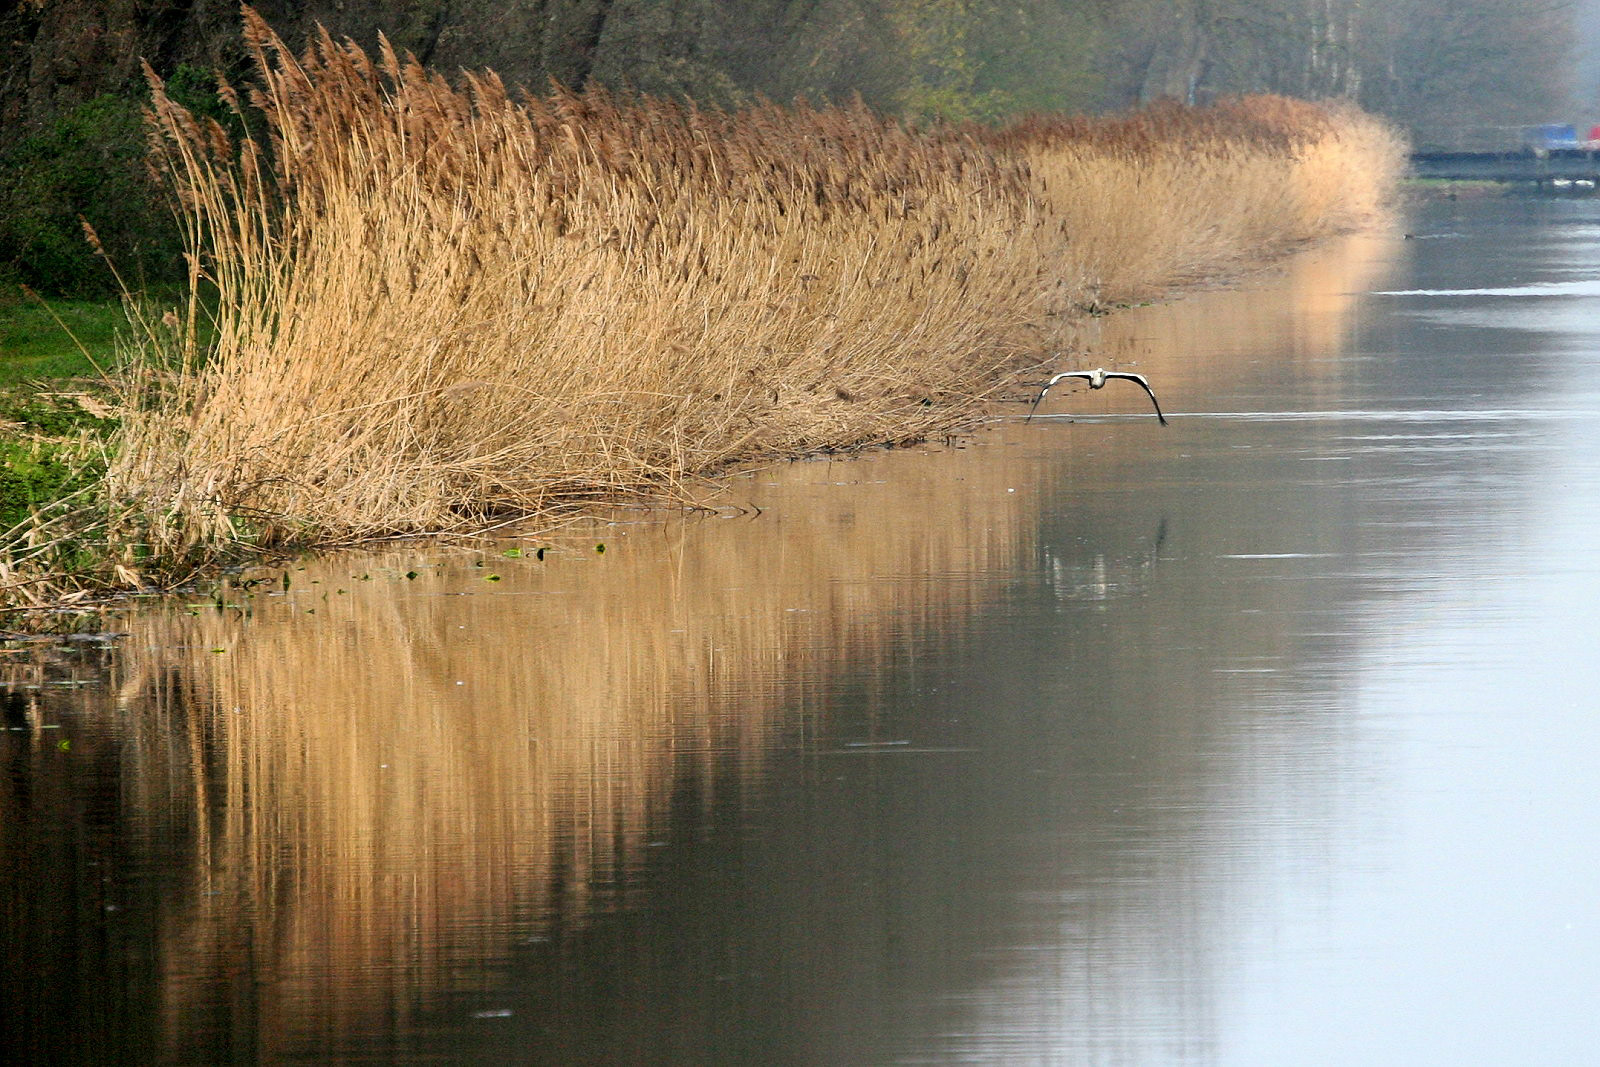 Am Coevorden-Picardie-Kanal